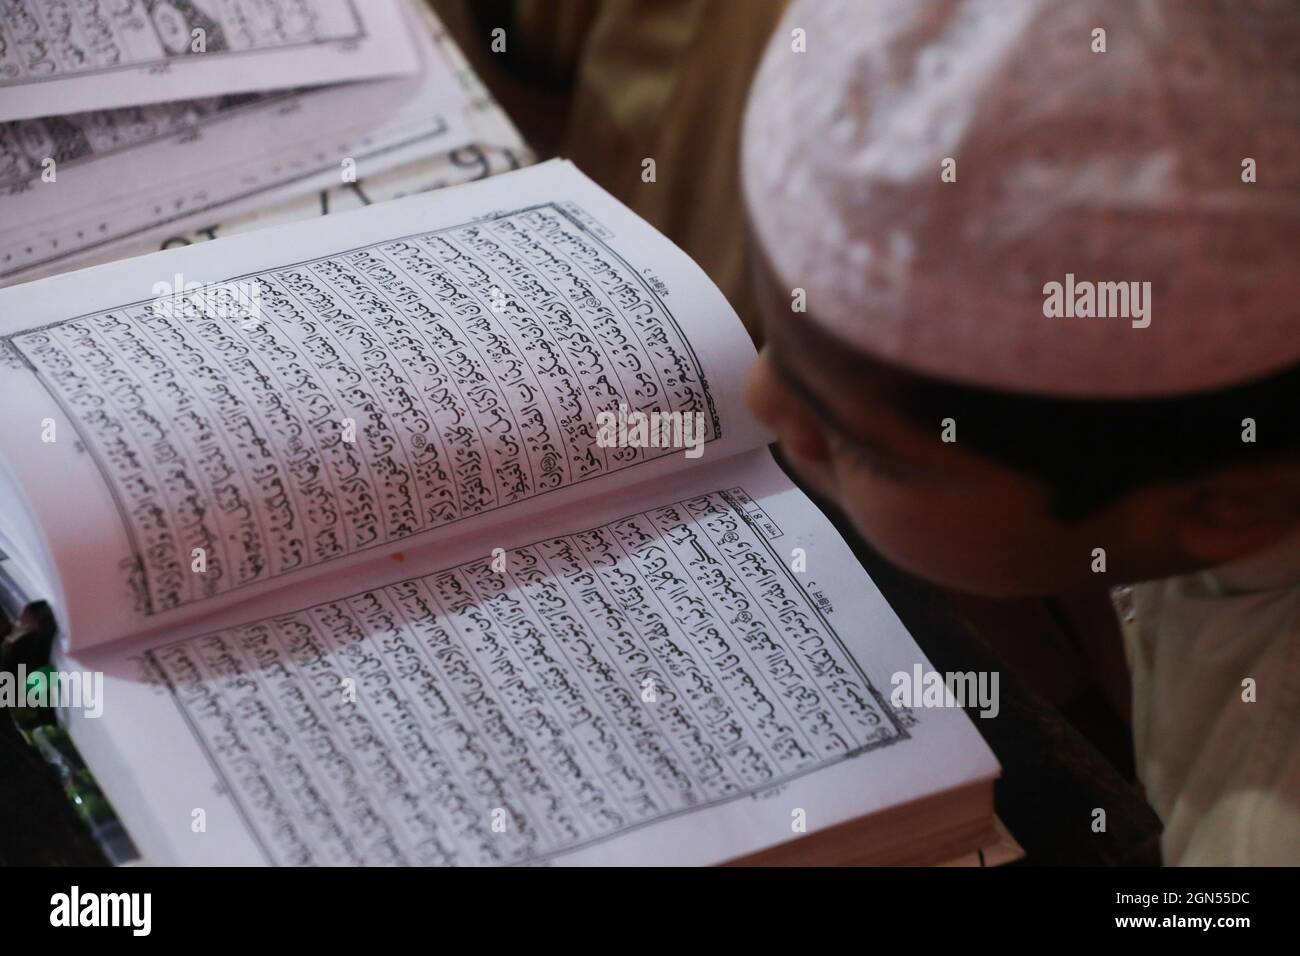 Nicht exklusiv: Muslimische Schüler lernen, den Koran in einer 'Madrasa', einer religiösen Schule für das Studium des Islam, nach mehreren Monaten Covid zu rezitieren Stockfoto